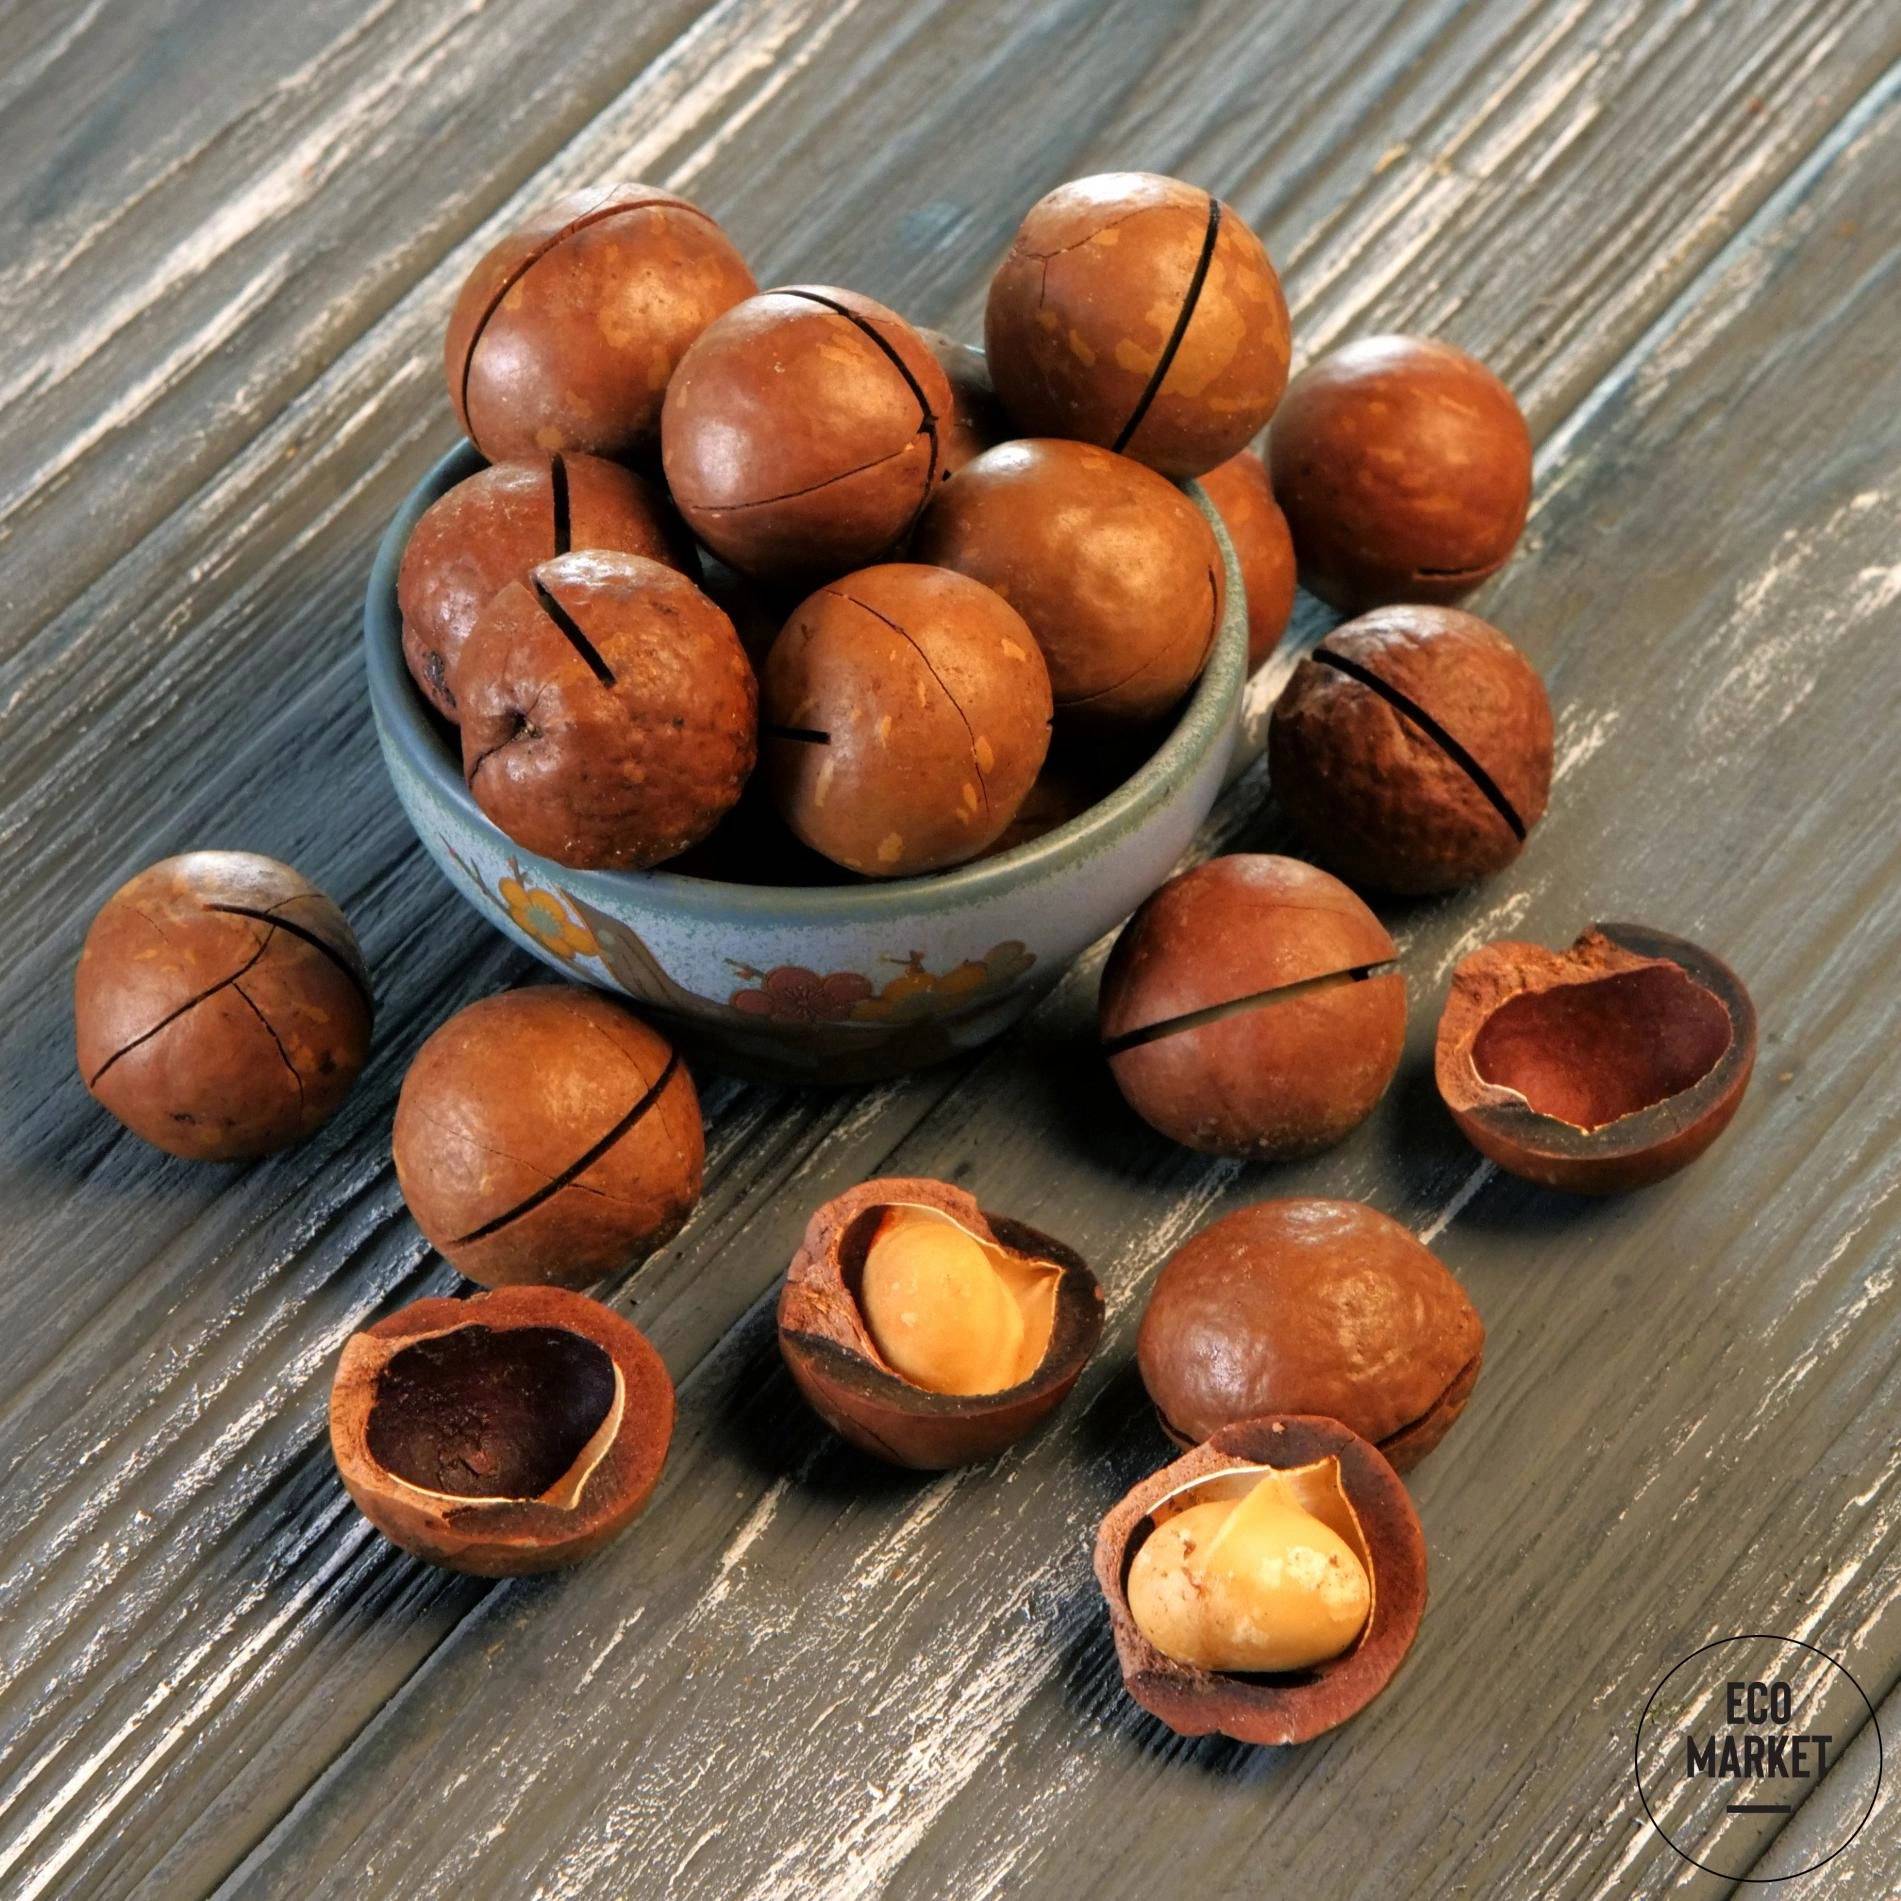 Вкус и запах ореха макадамия: почему называется сладким, как обрабатывают ванилью, чем пропитывают, вымачивают ли со скорлупой, на что похож этот круглый плод?